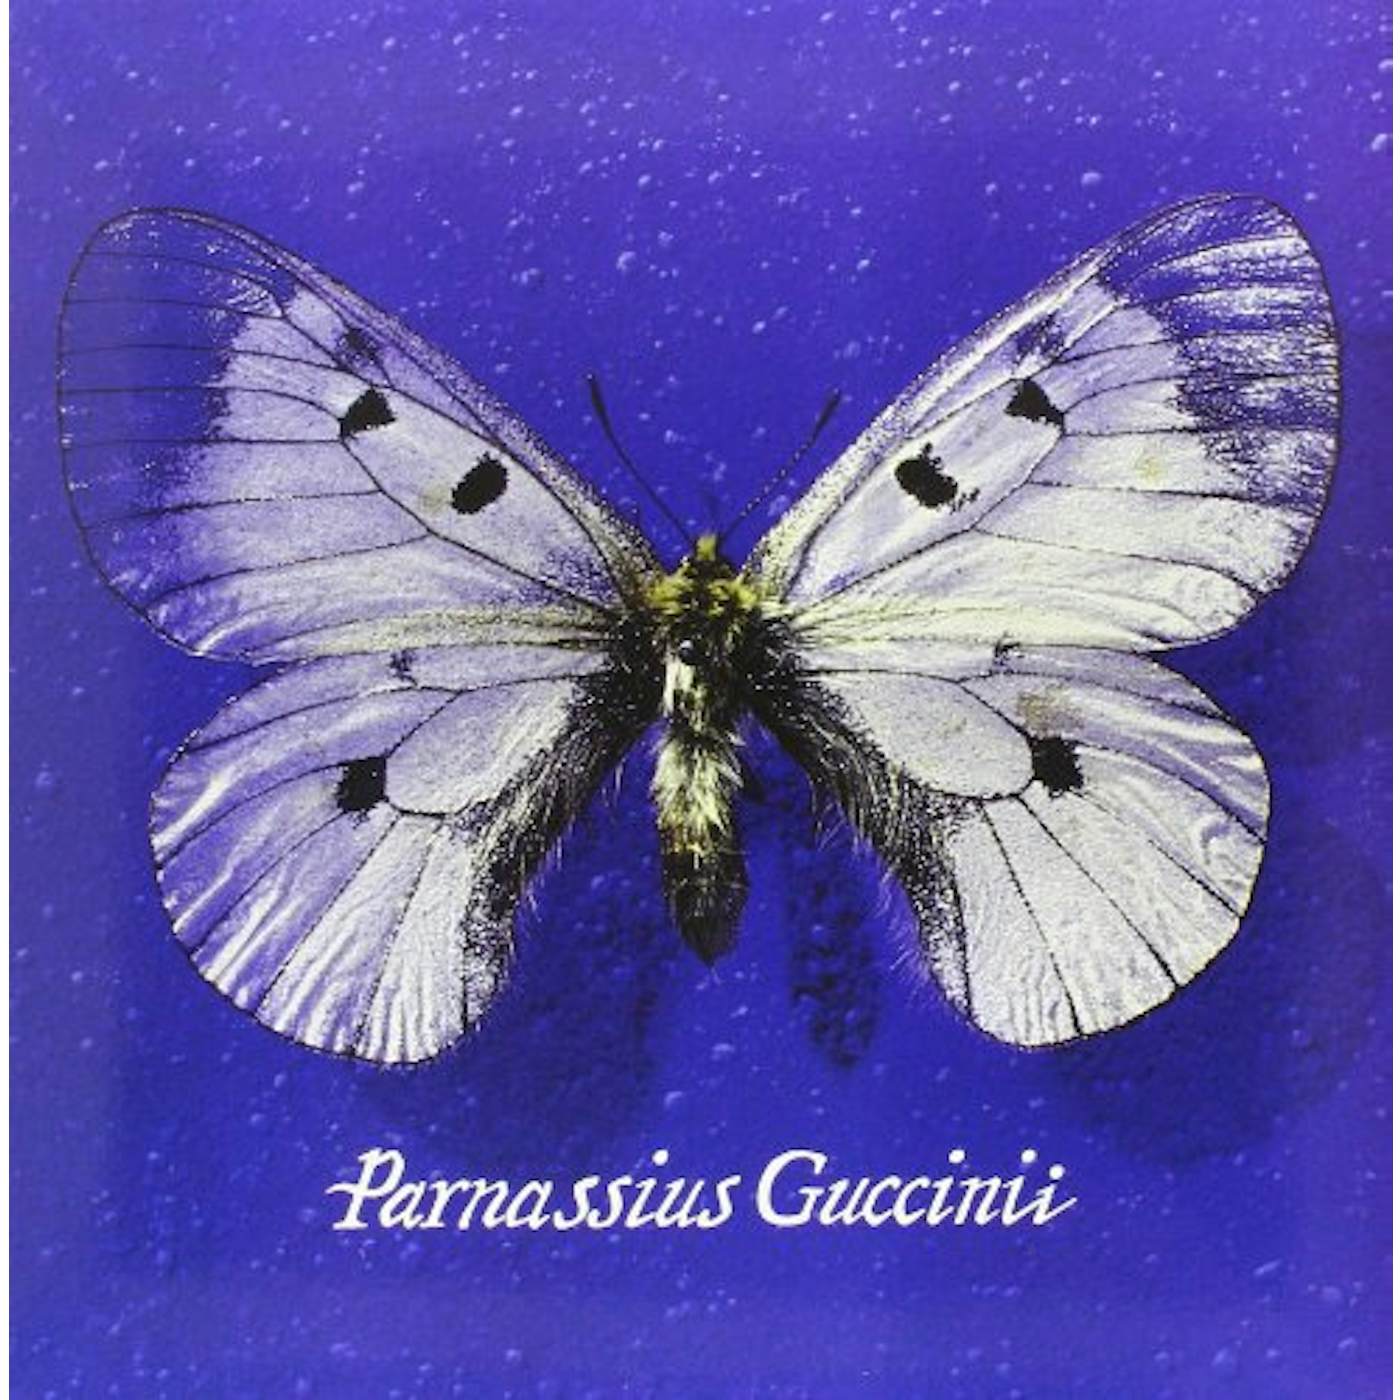 Francesco Guccini Parnassius Guccinii Vinyl Record